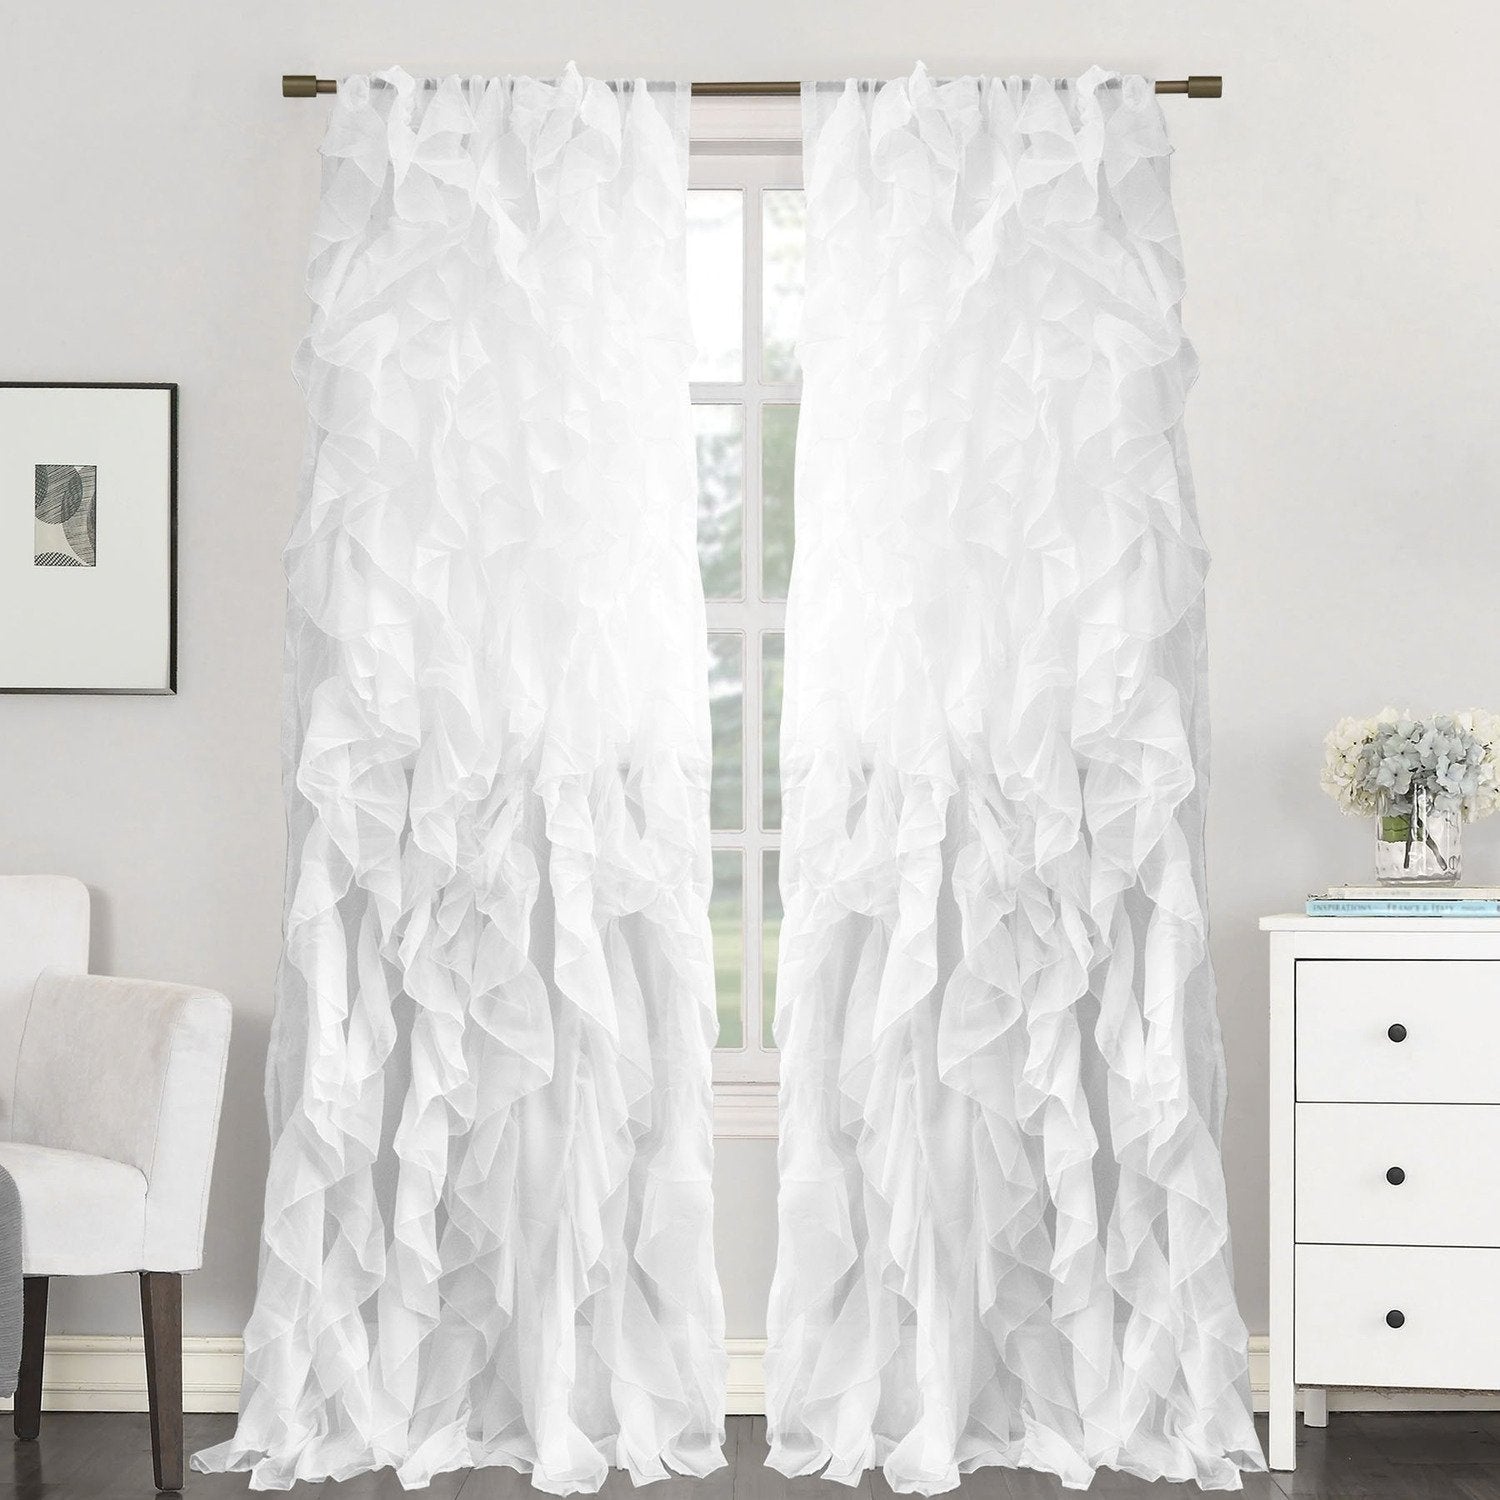 Chic Sheer Voile Ruffled Window Curtain 2-Pack White 84X100